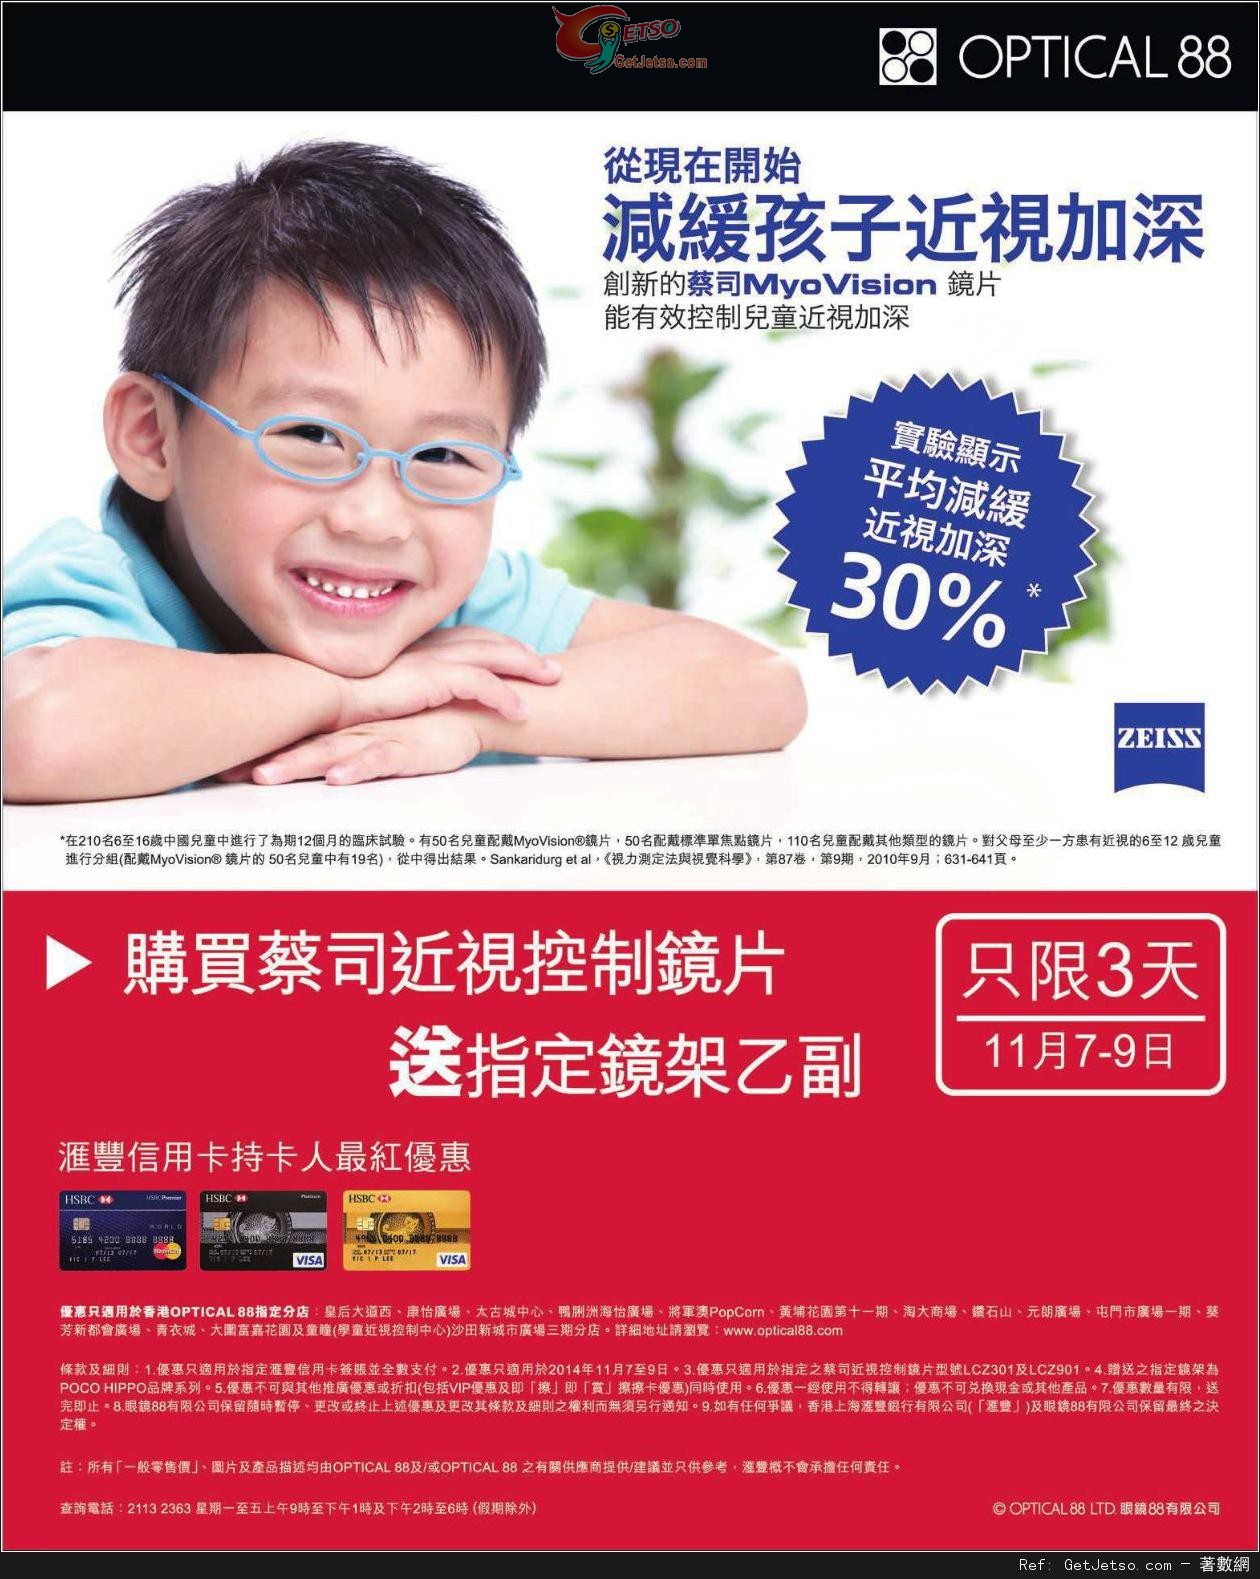 滙豐信用卡享眼鏡88購買蔡司鏡片送鏡架優惠(至14年11月9日)圖片1